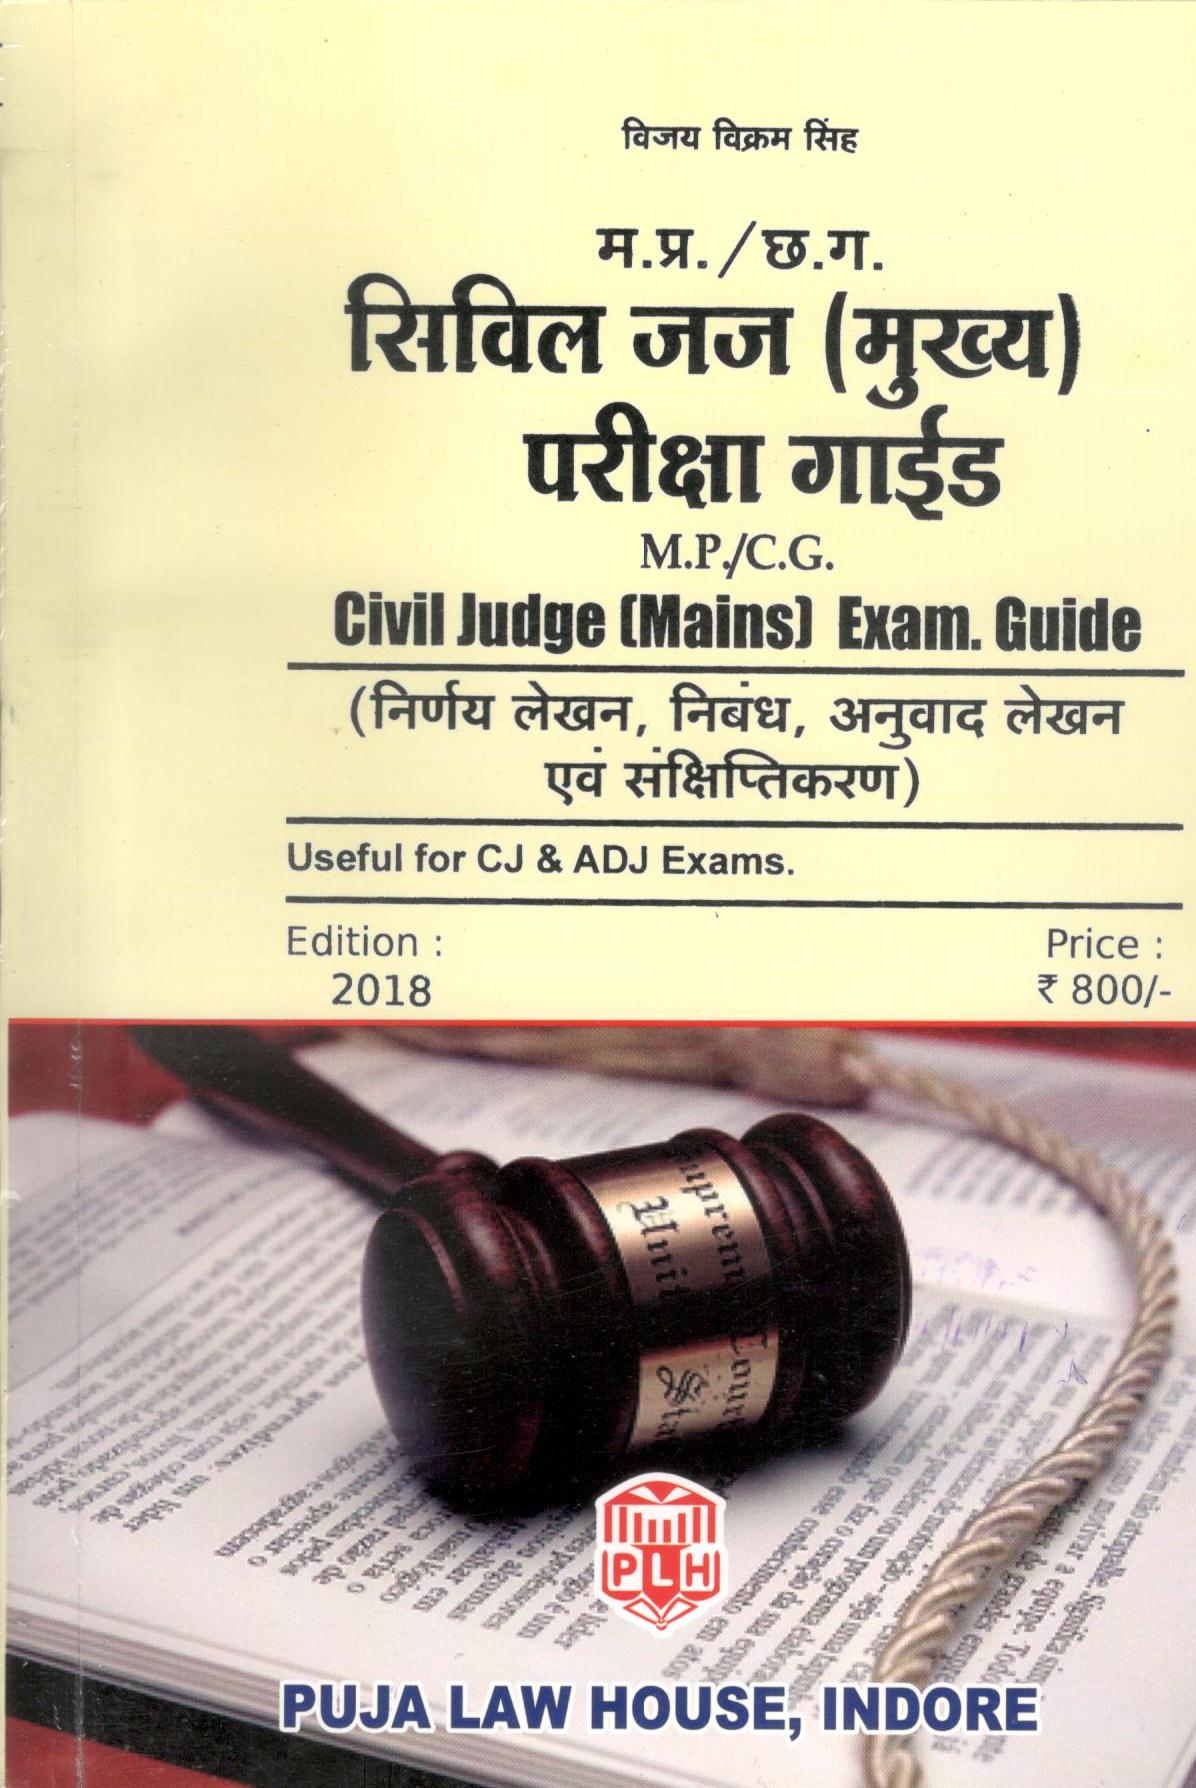  Buy विजय विक्रम सिंह - M.P./C.G. Civil Judge (Mains) Exam Guide / मध्य प्रदेश / छत्तीसगढ़ सिविल जज (मुख्य) परीक्षा गाइड